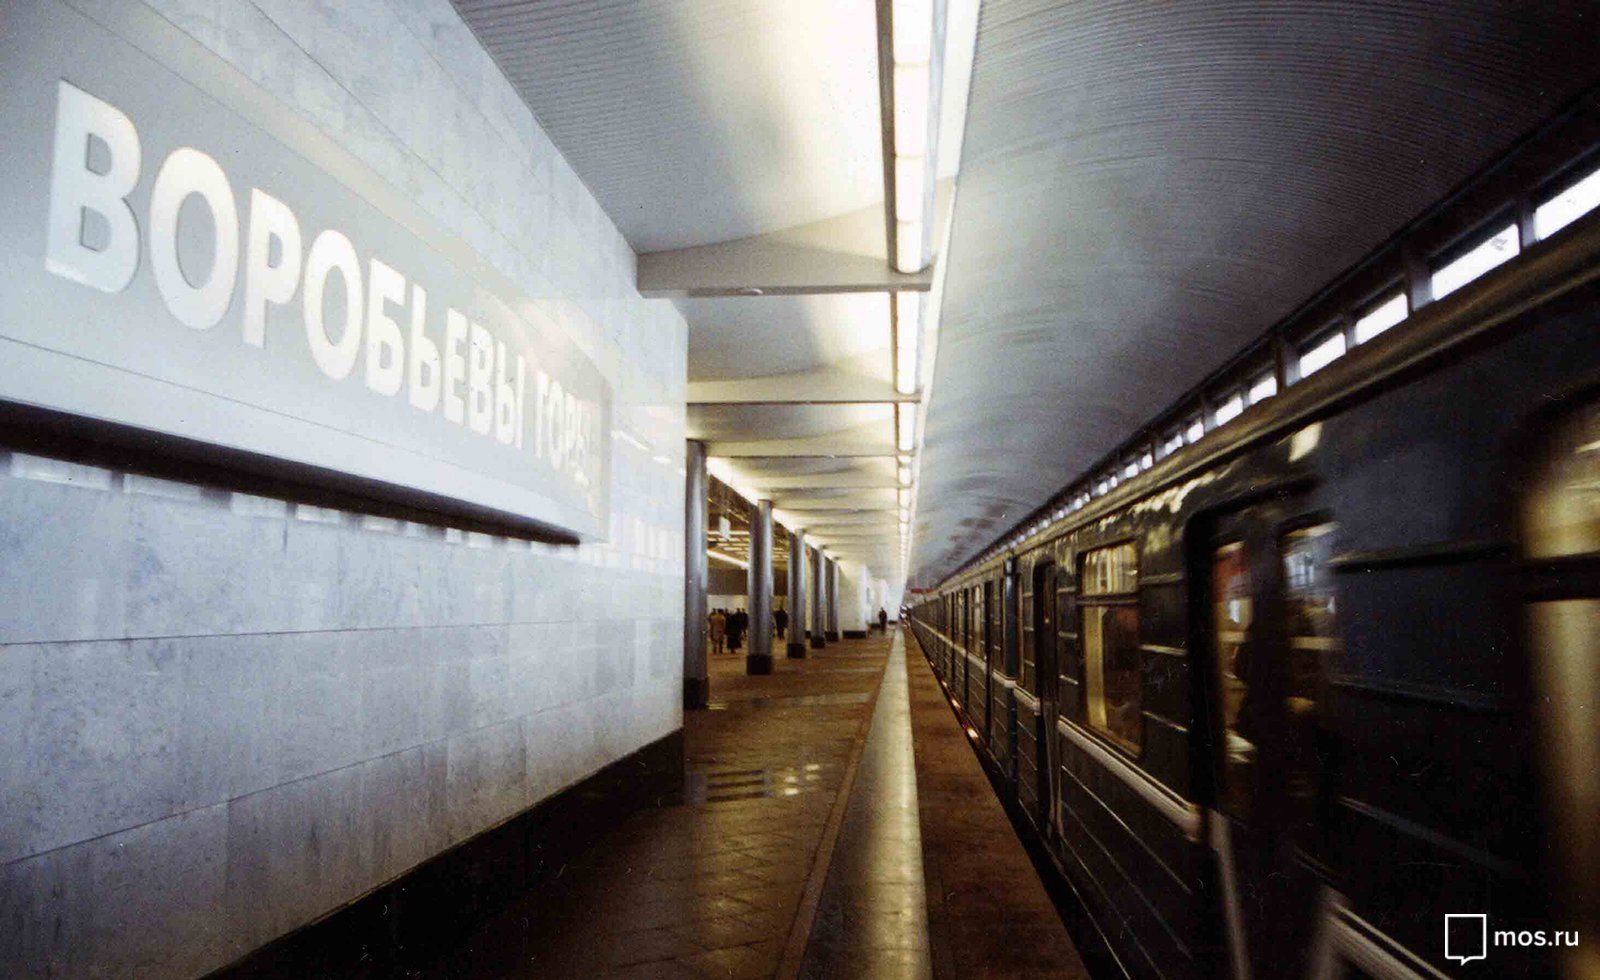 Станция метро «Воробьевы горы» после капитального ремонта и реконструкции. Автор В. Мариньо. 15 декабря 2002 года. Главархив